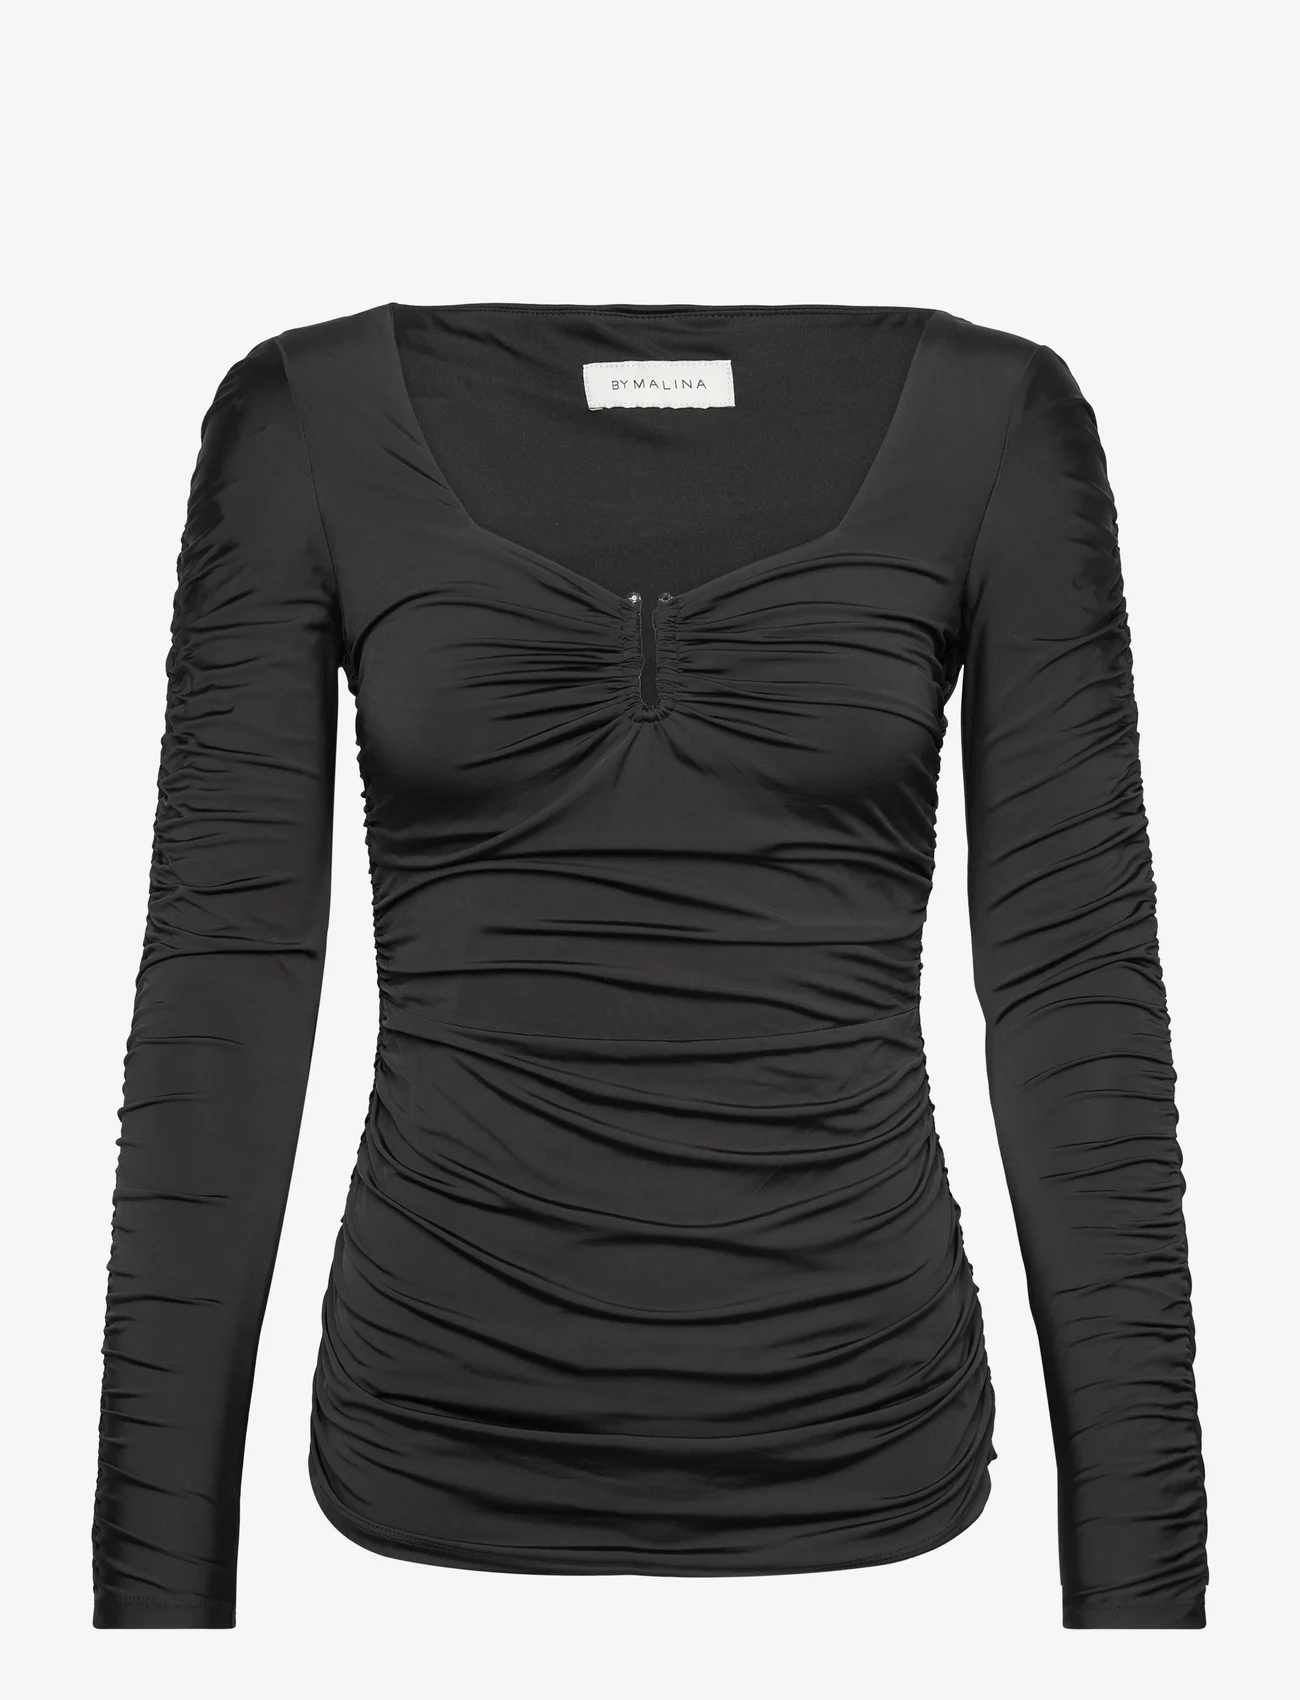 Malina - Elle heart shaped jersey top - langärmlige tops - black - 0